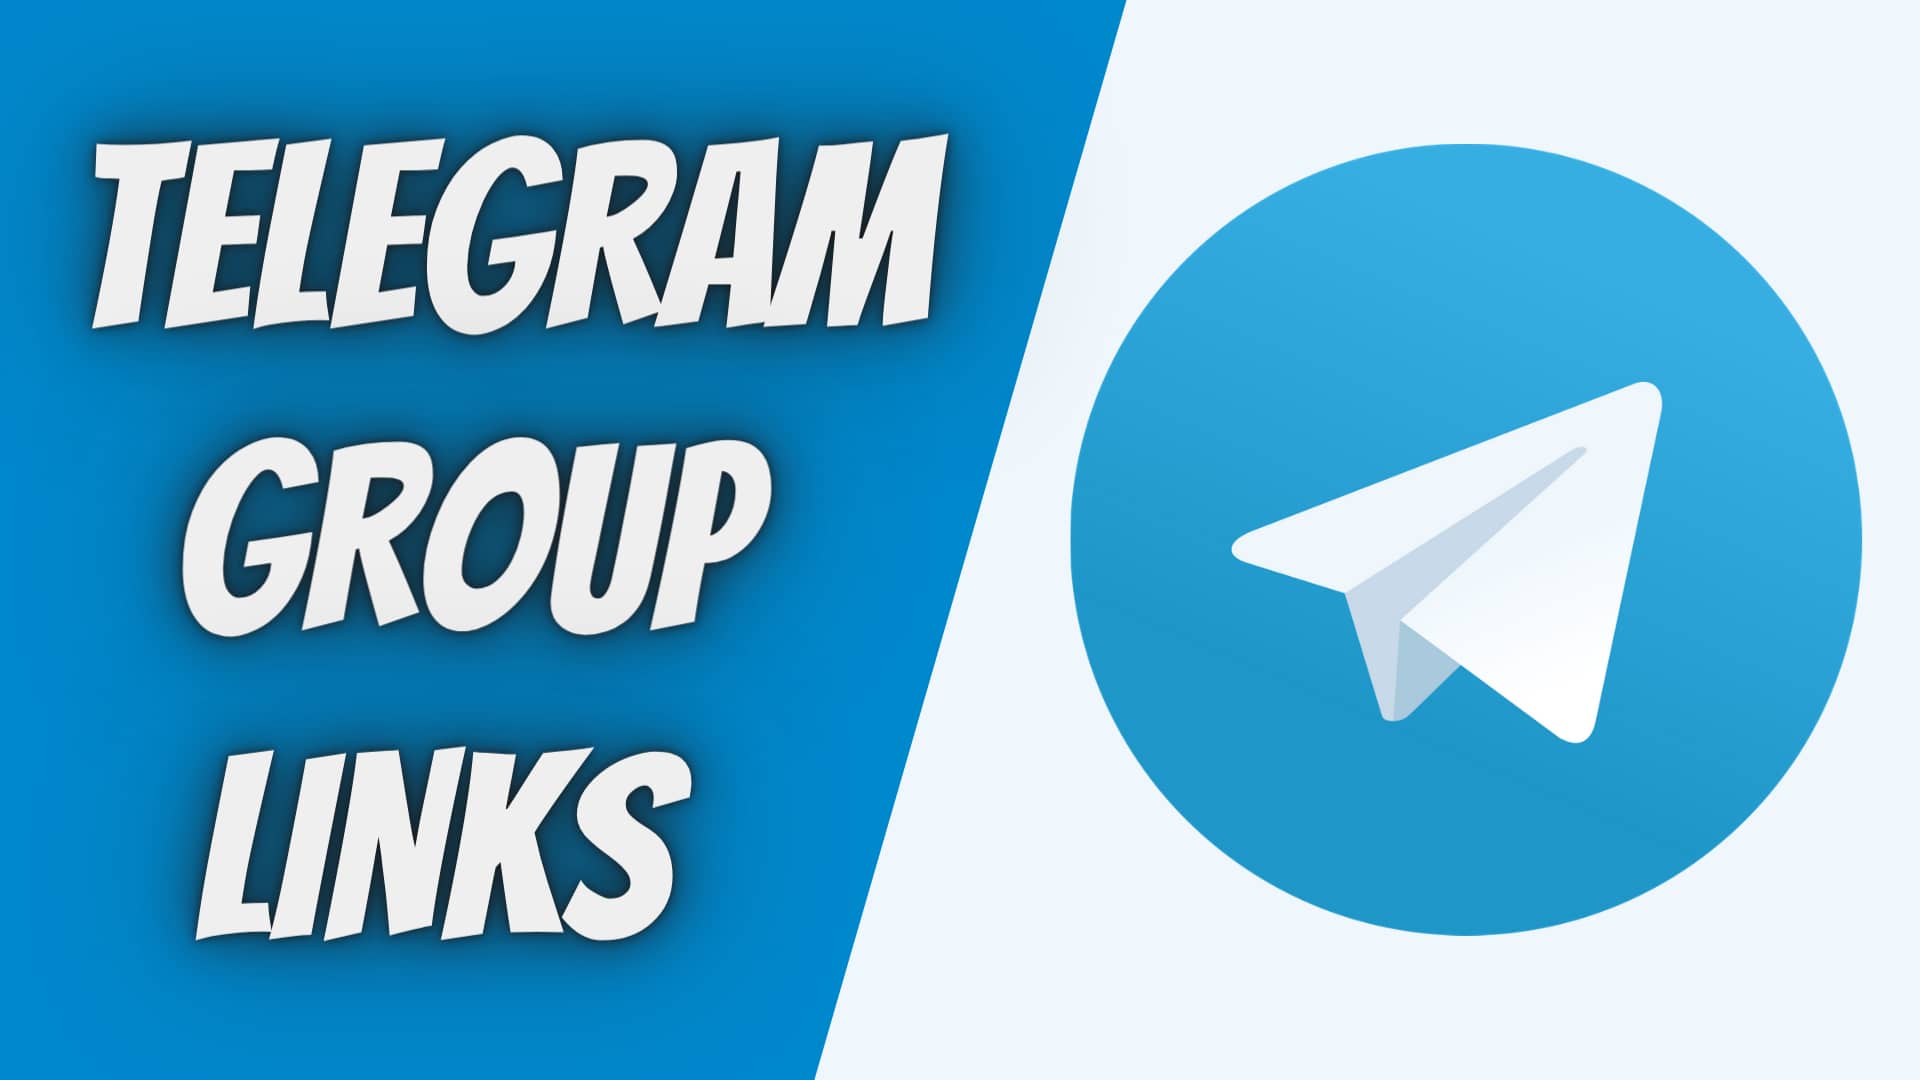 Telegram Group Links